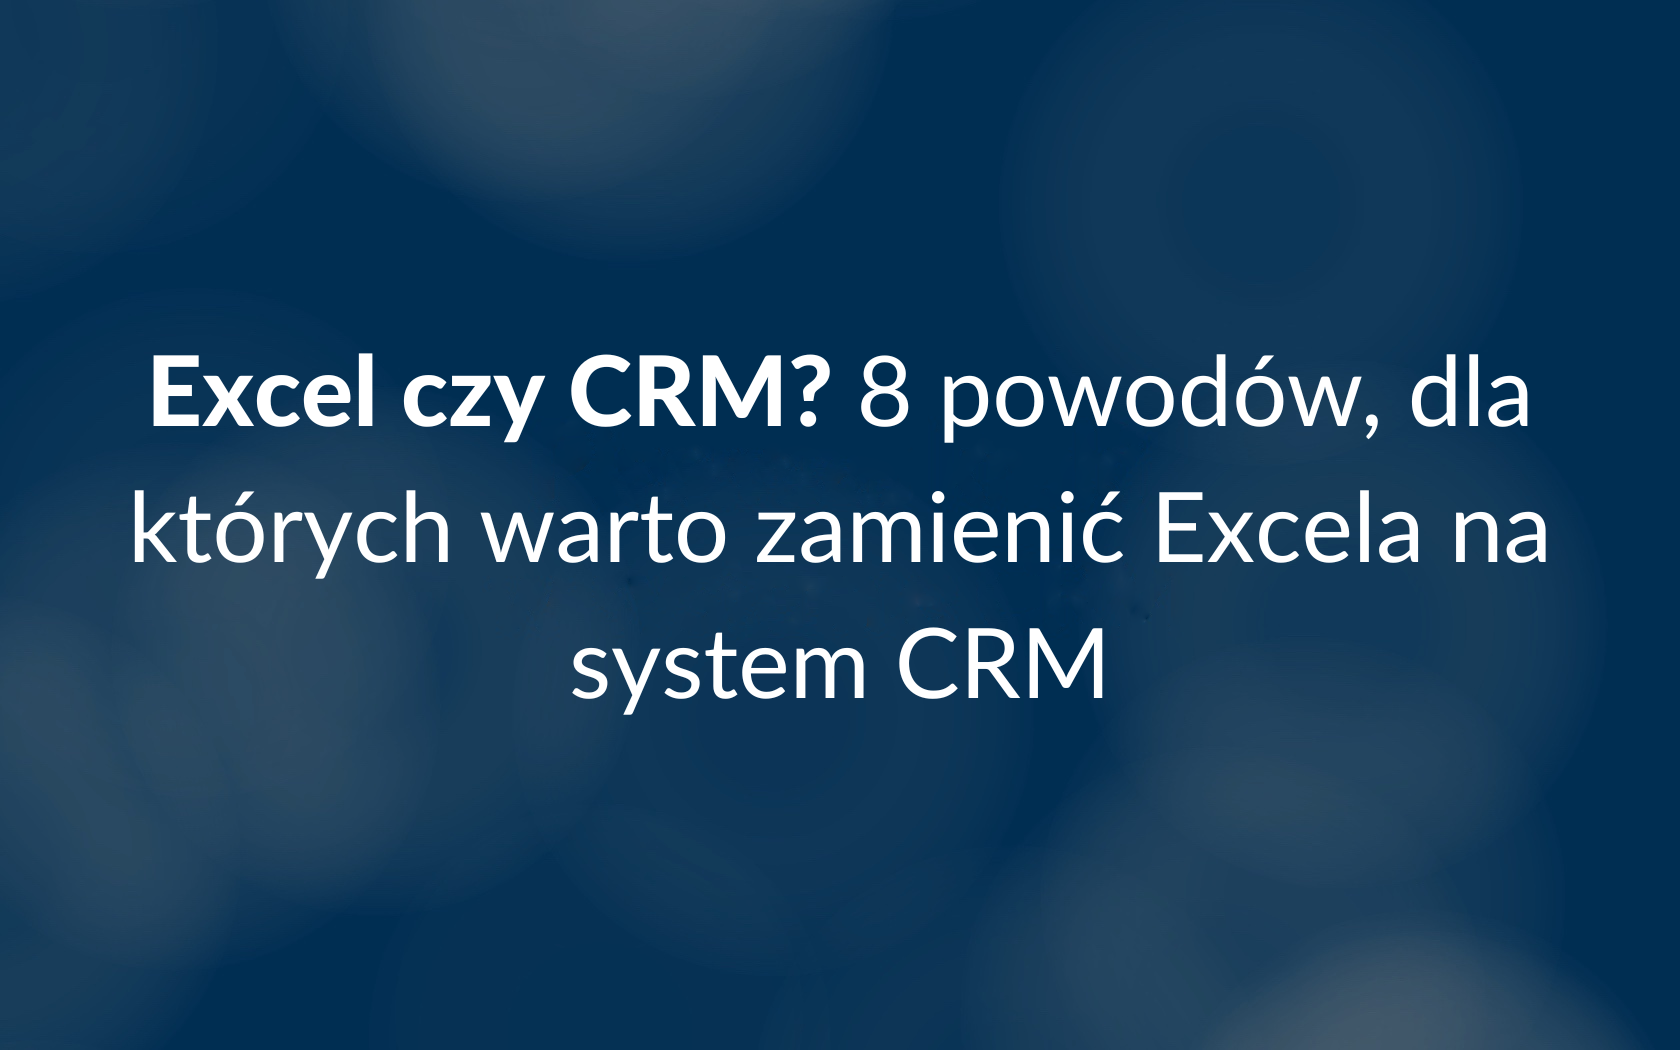 Excel czy CRM? 8 powodów, dla których warto zamienić Excela na system CRM